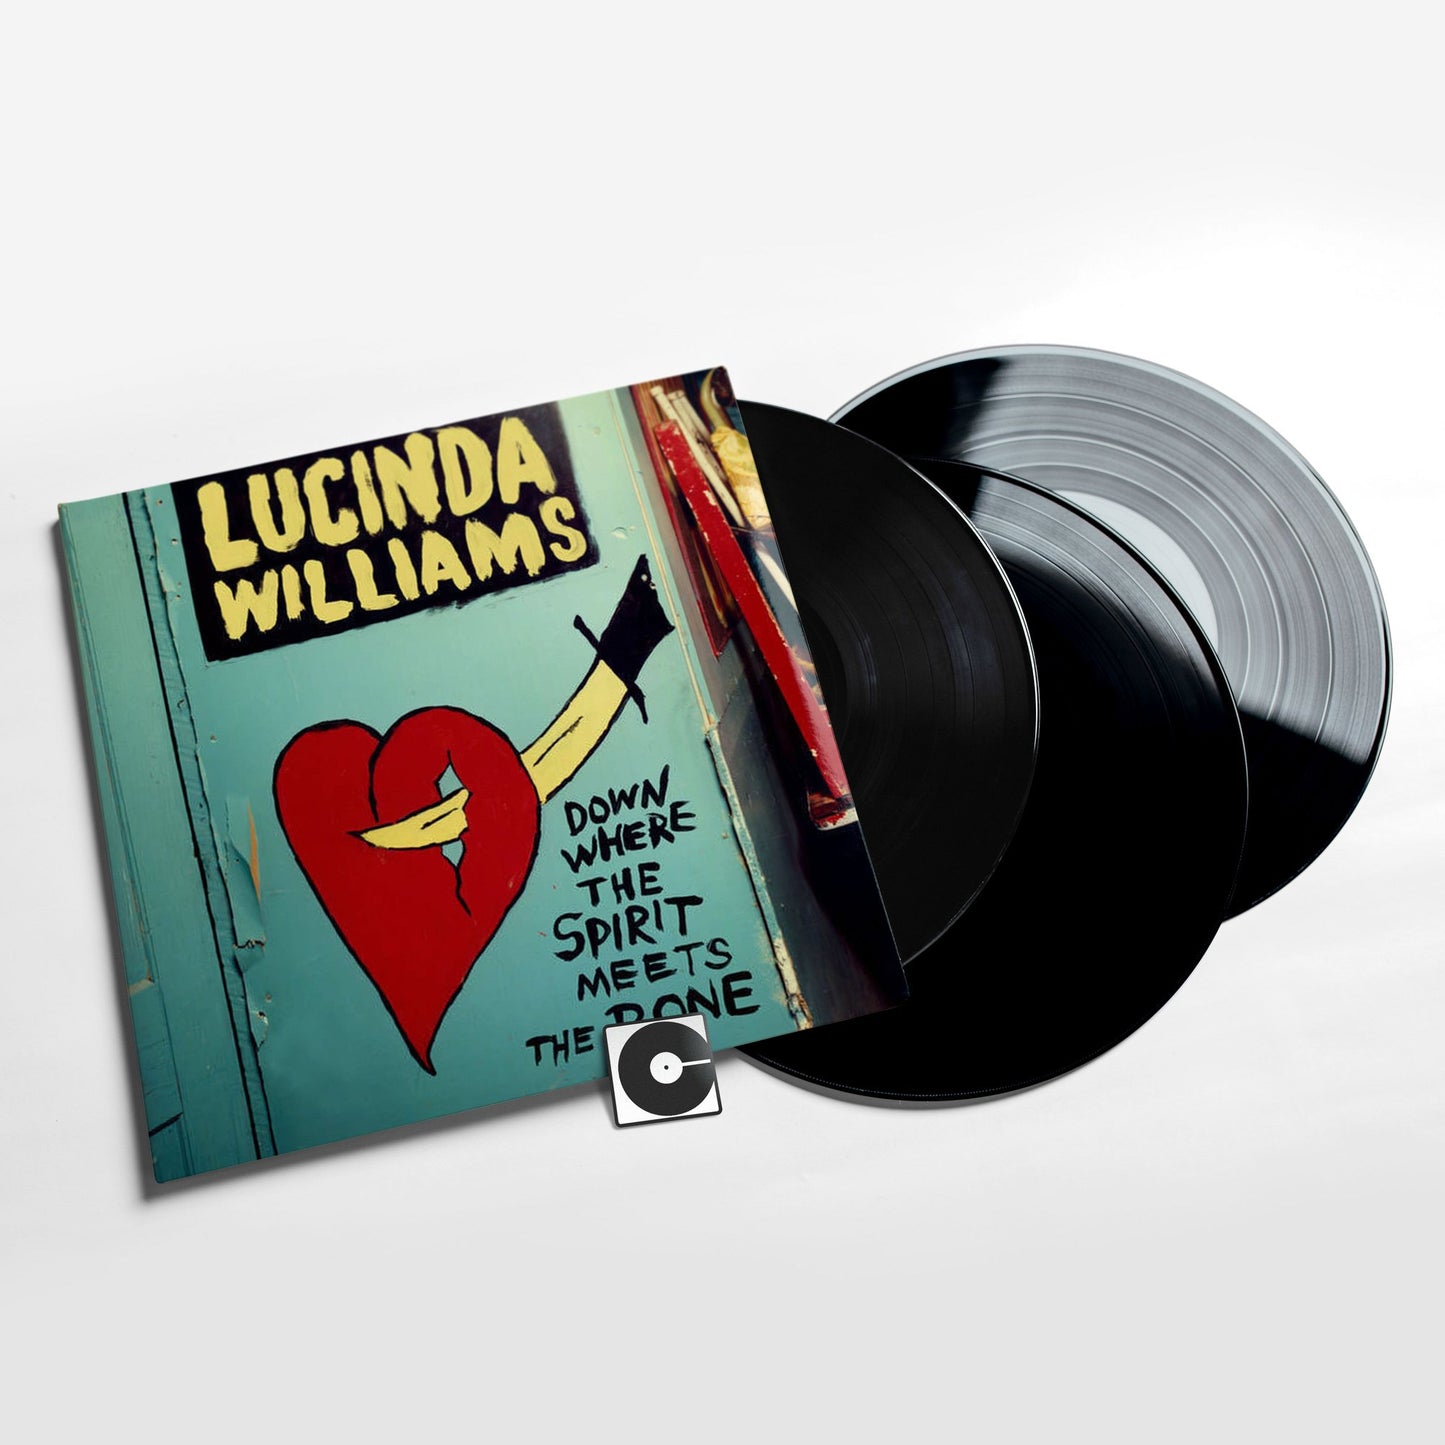 Lucinda Williams - "Down Where The Spirit Meets The Bone"